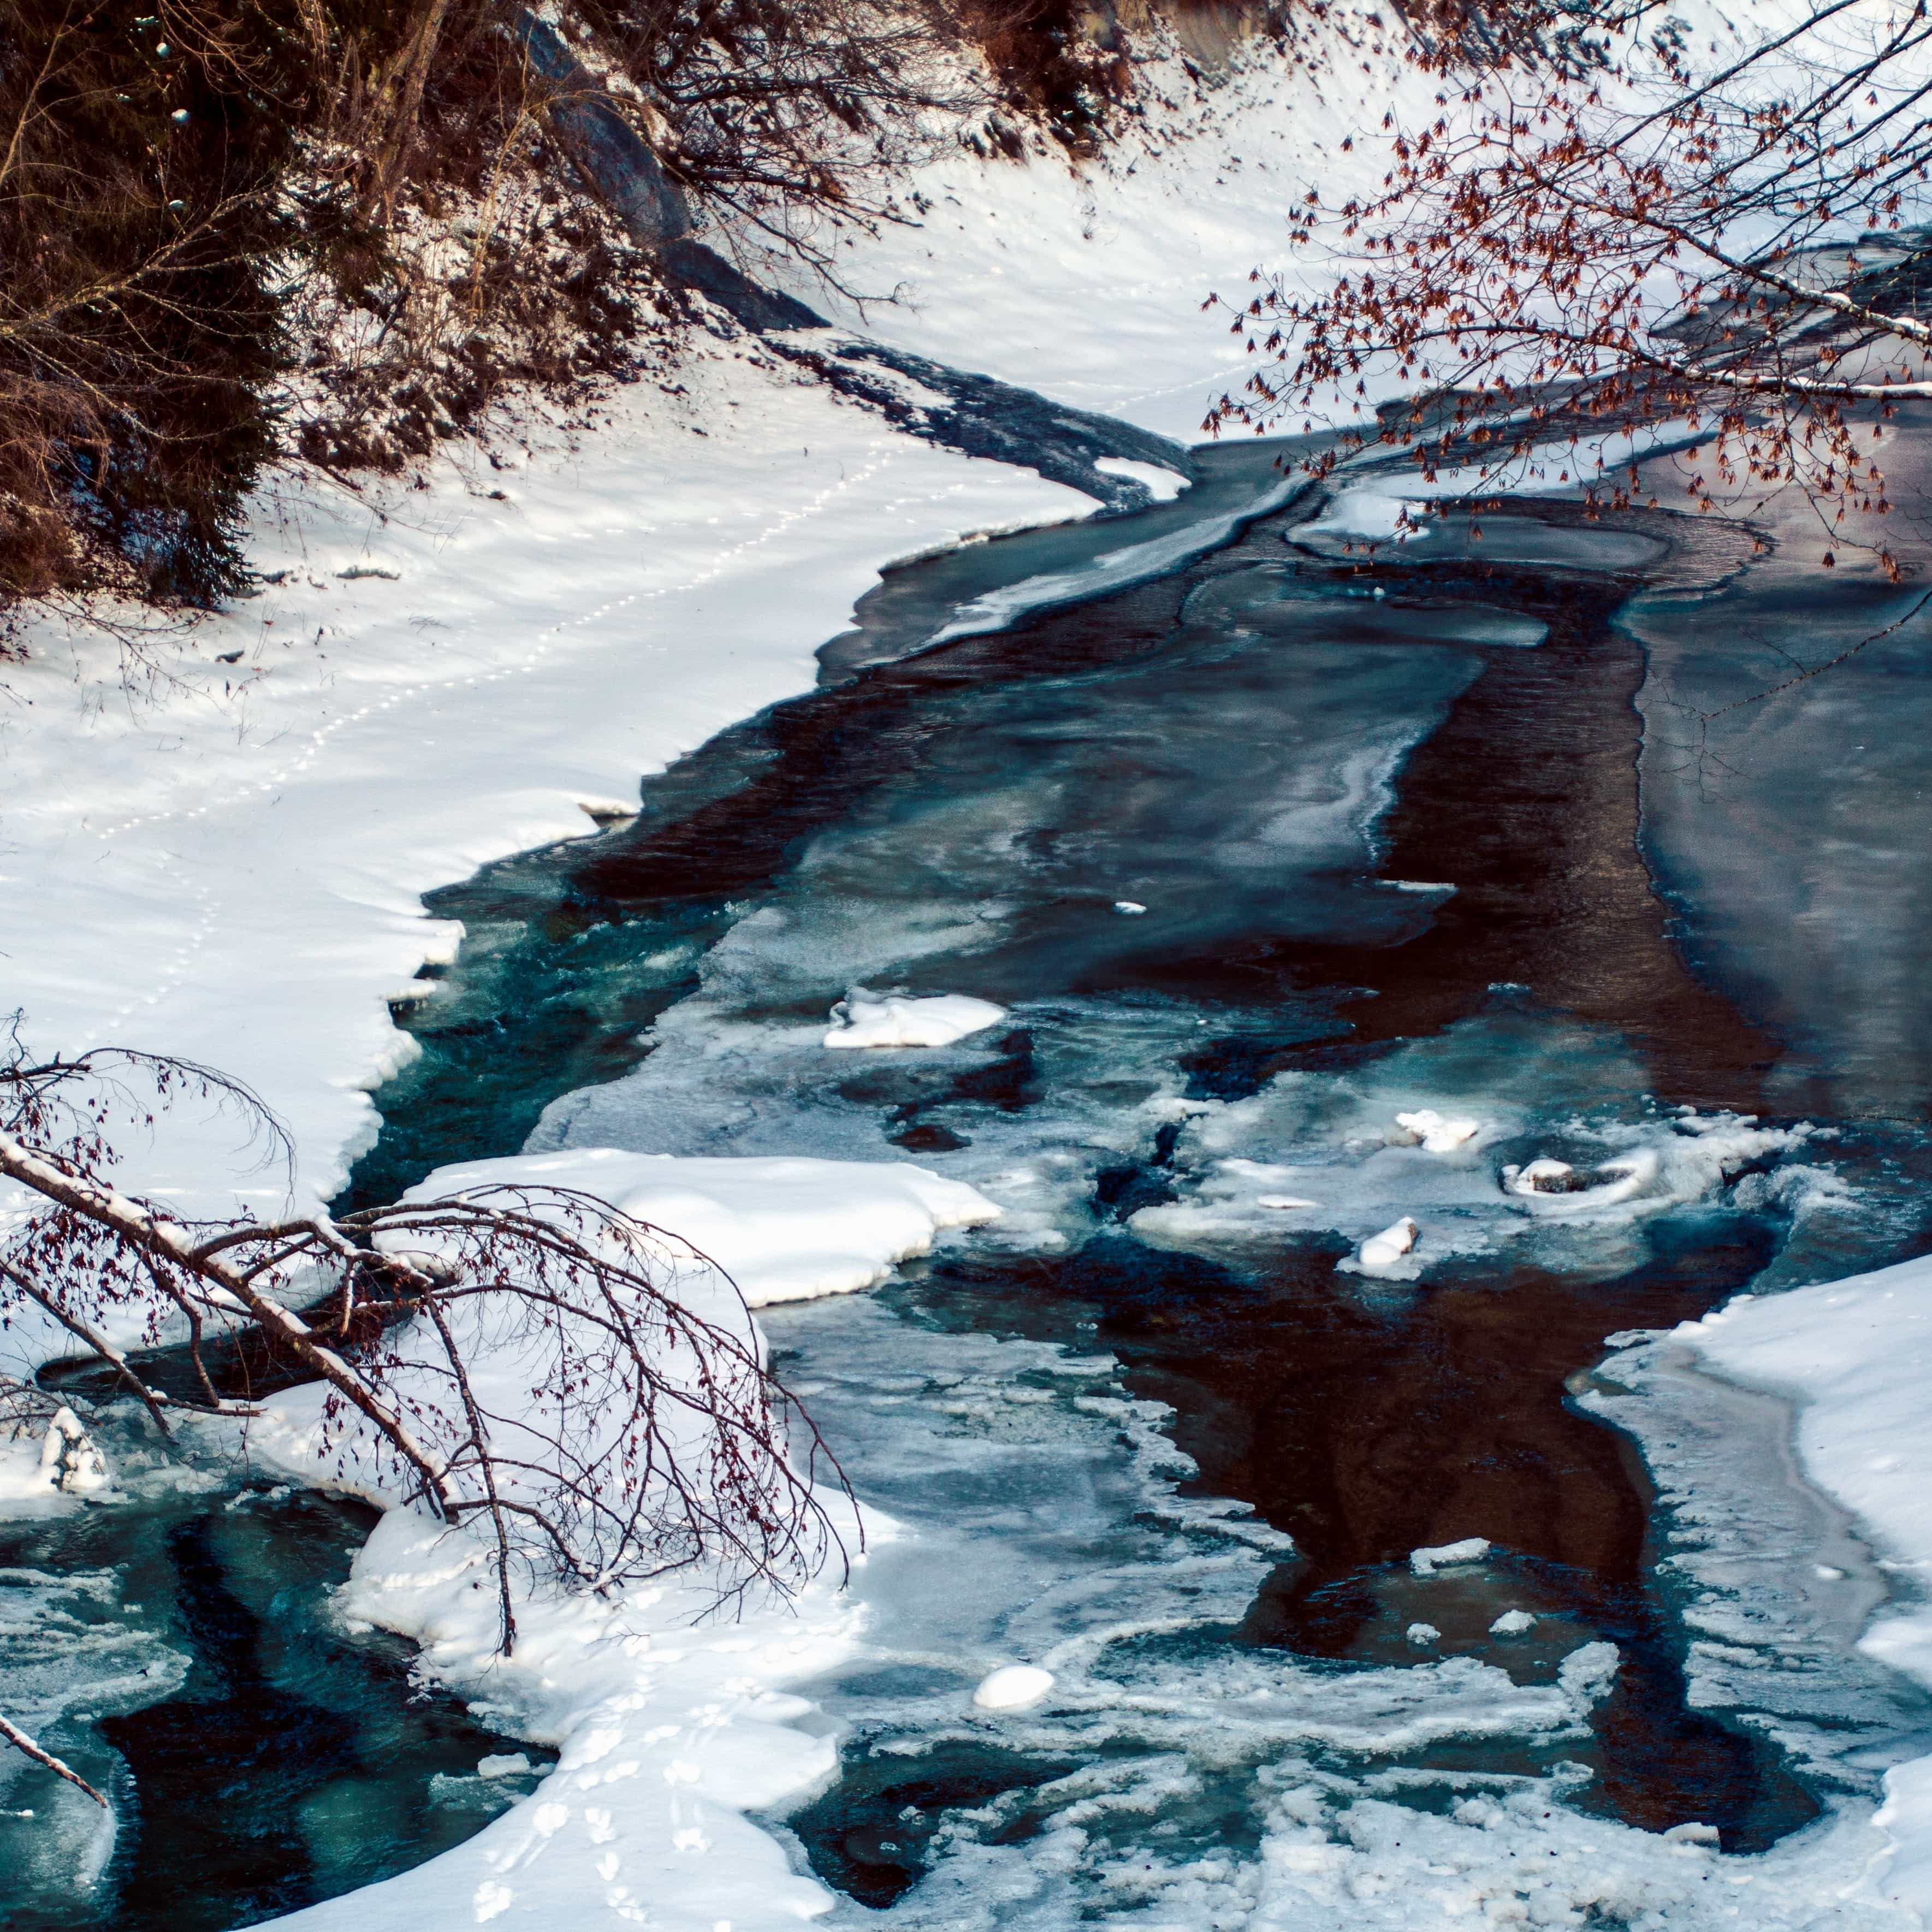 Вода в реке замерзла. Замерзшая река. Снег и лед в природе. Вода зимой. Лед в природе.